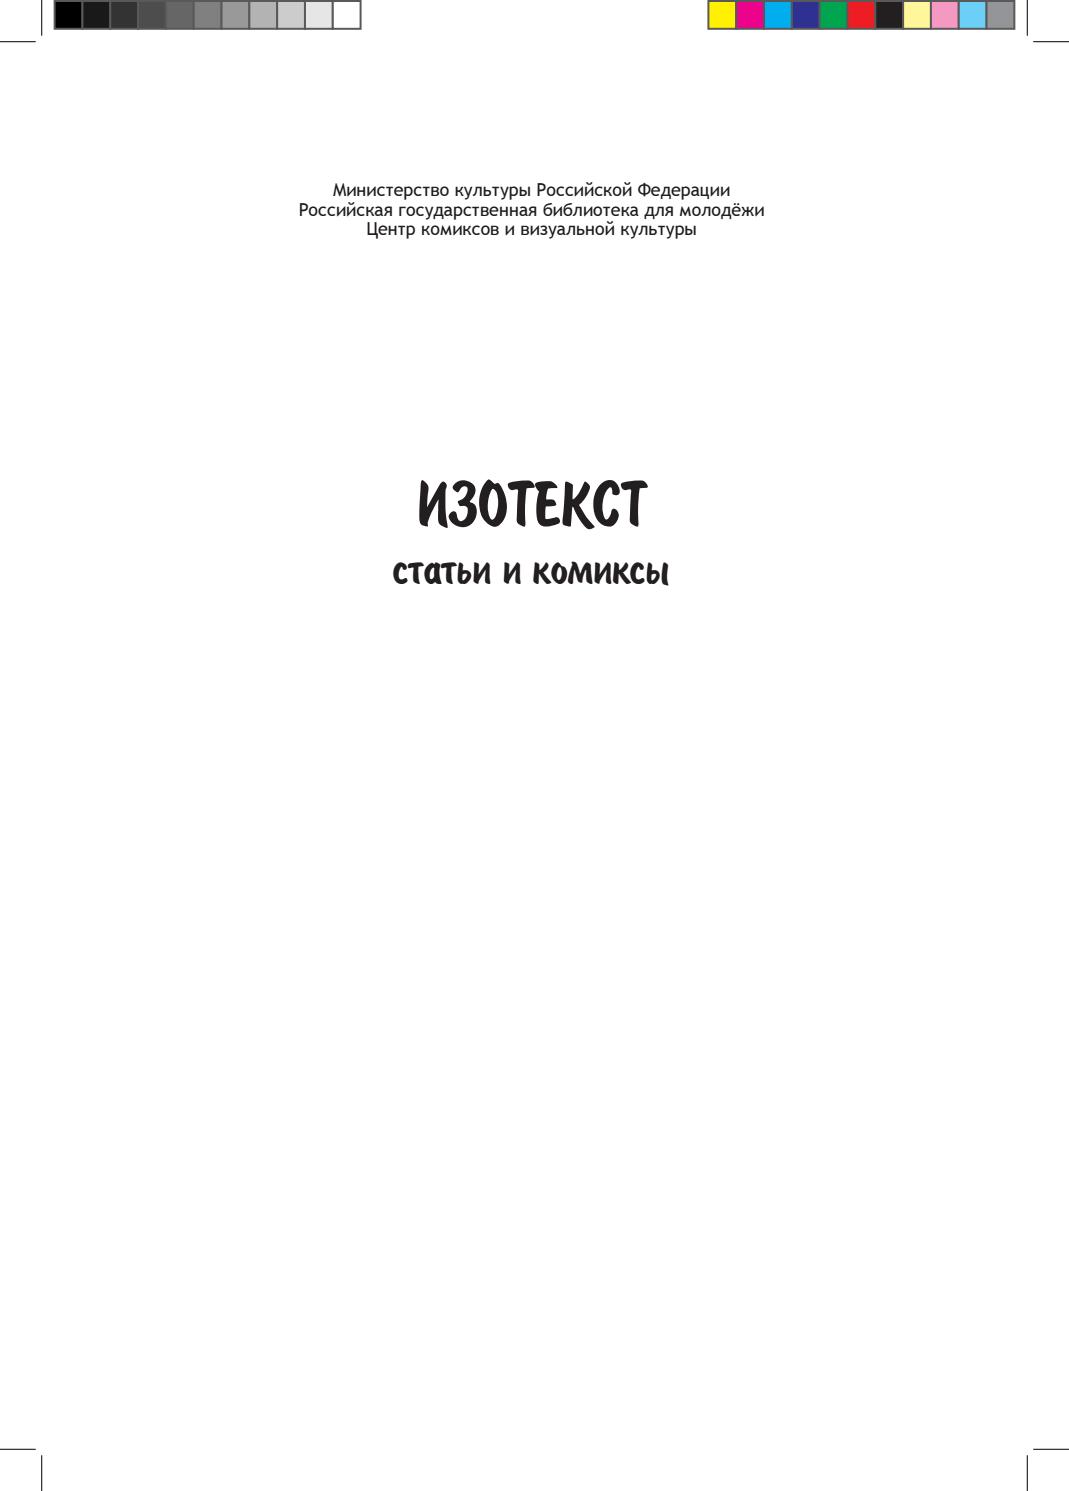 Изотекст. Статьи и комиксы, 2014, А. И. Кунин